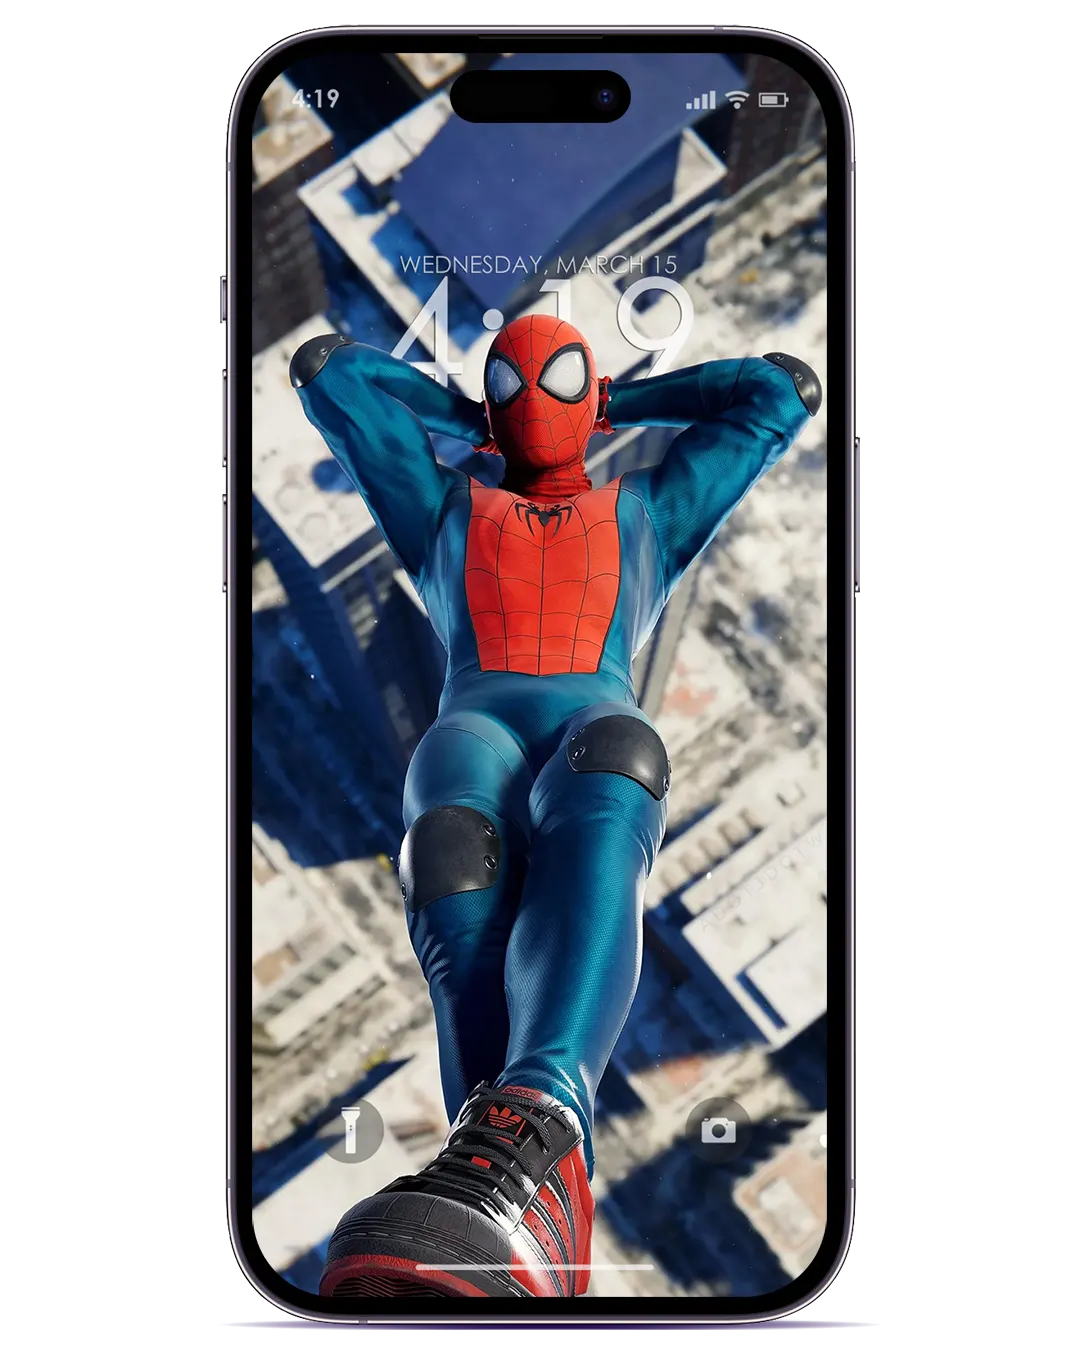 Bạn là fan của siêu anh hùng Spider-Man? Hãy tải ngay ảnh nền iOS Spider-man Depth Effect để trang trí màn hình điện thoại của mình. Với hiệu ứng sâu, bạn sẽ ngỡ như đang rời khỏi thế giới thực và chìm vào thế giới của Spider-Man. Hãy để ảnh nền iOS Spider-man Depth Effect đưa bạn vào thế giới kỳ diệu này.